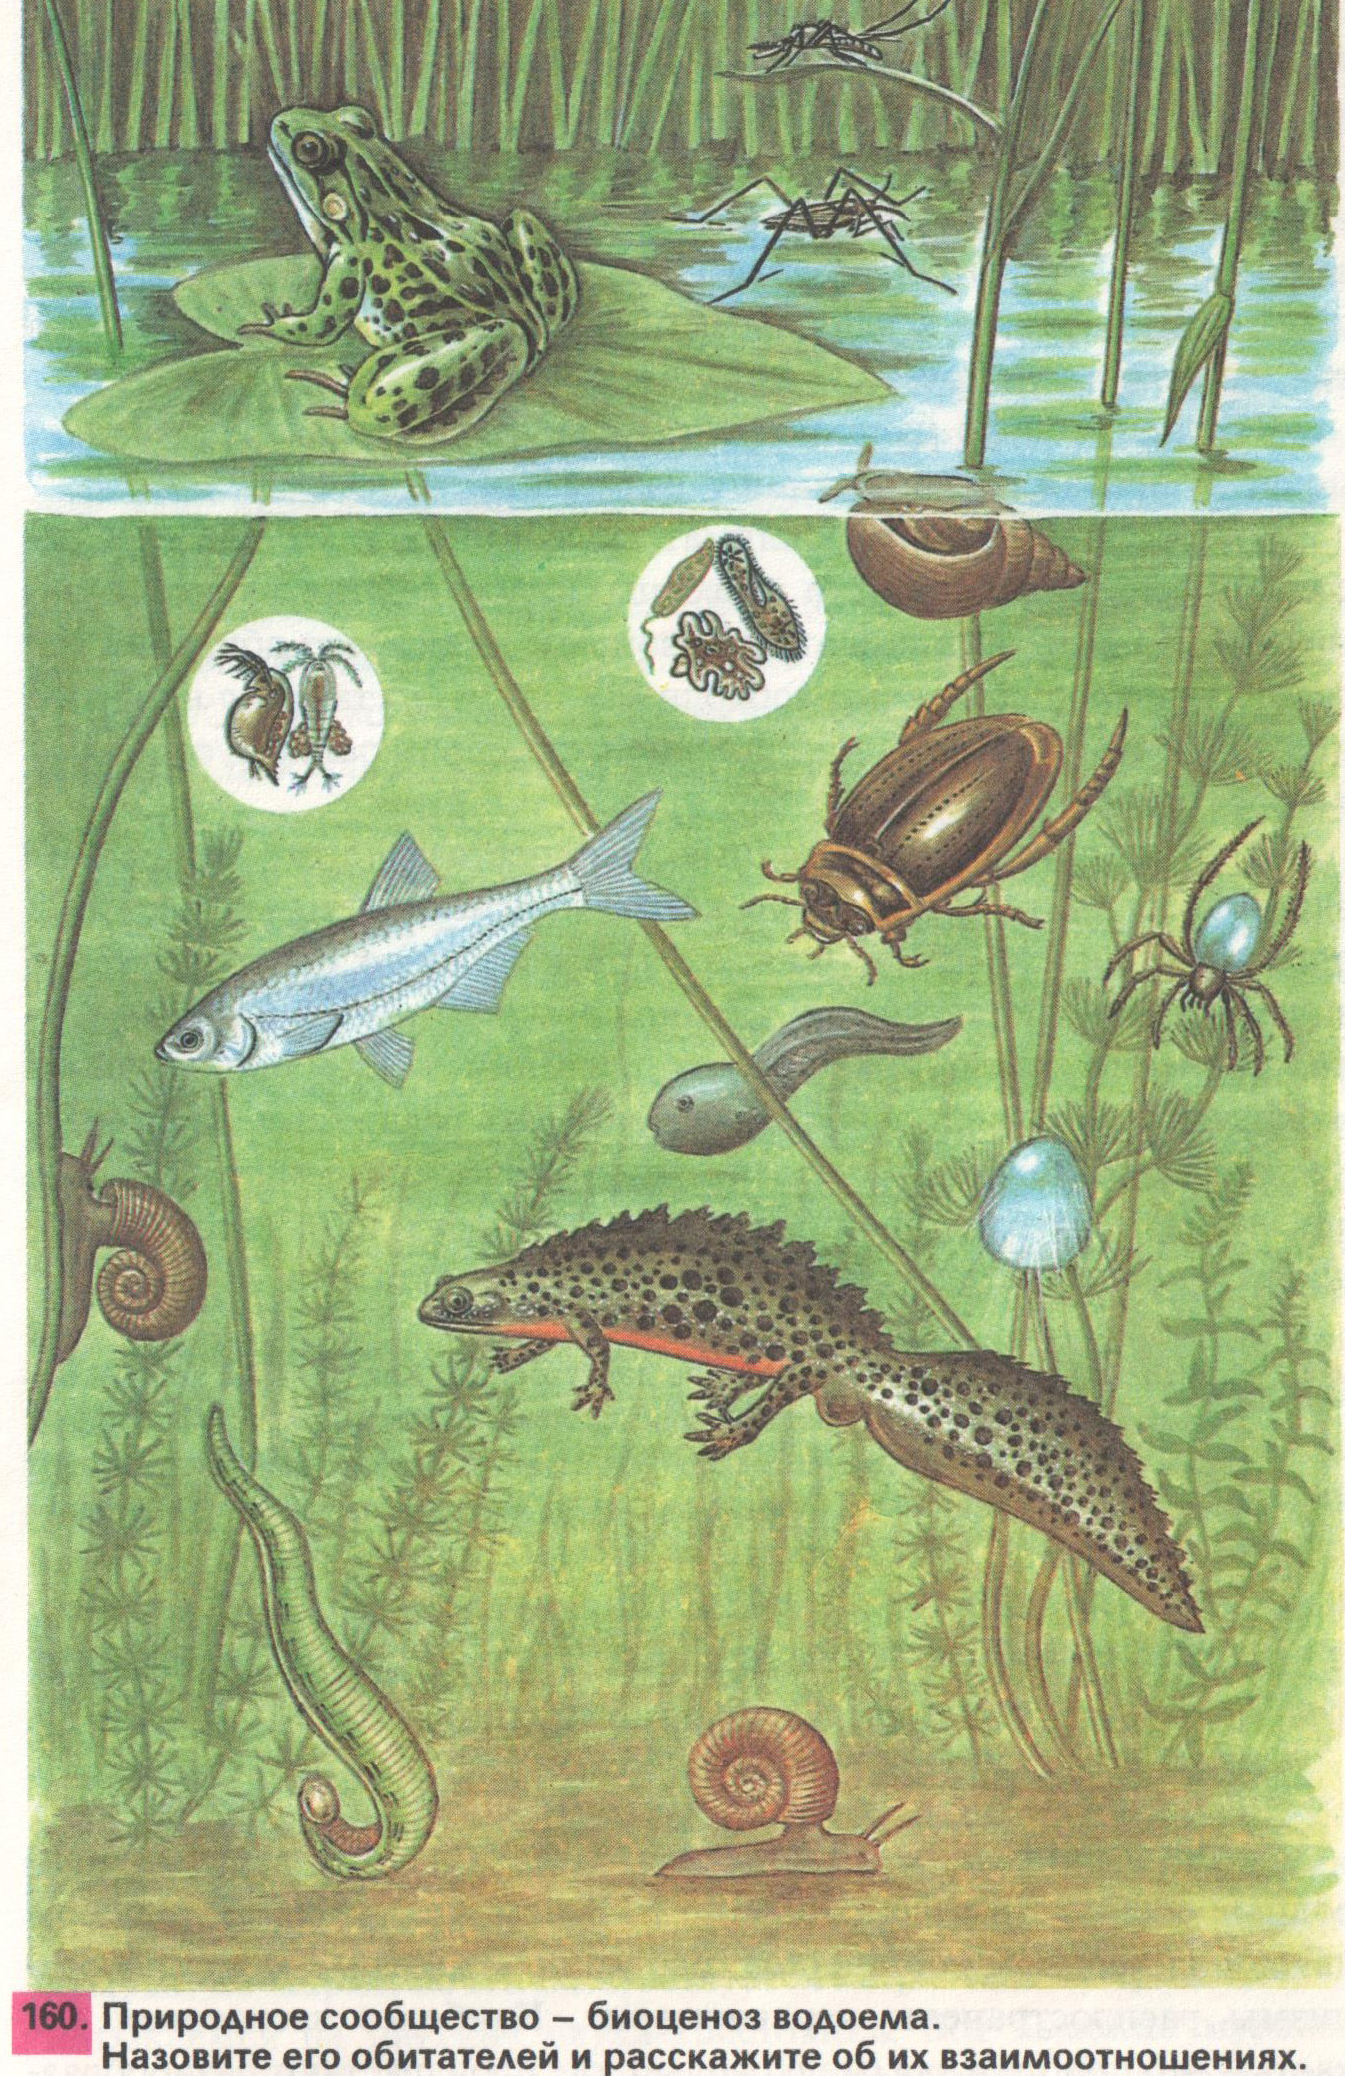 Организмы пруда. Природное сообщество биоценоз водоема. Обитатели пруда. Обитатели природных сообществ. Обитатели пресноводных водоемов.